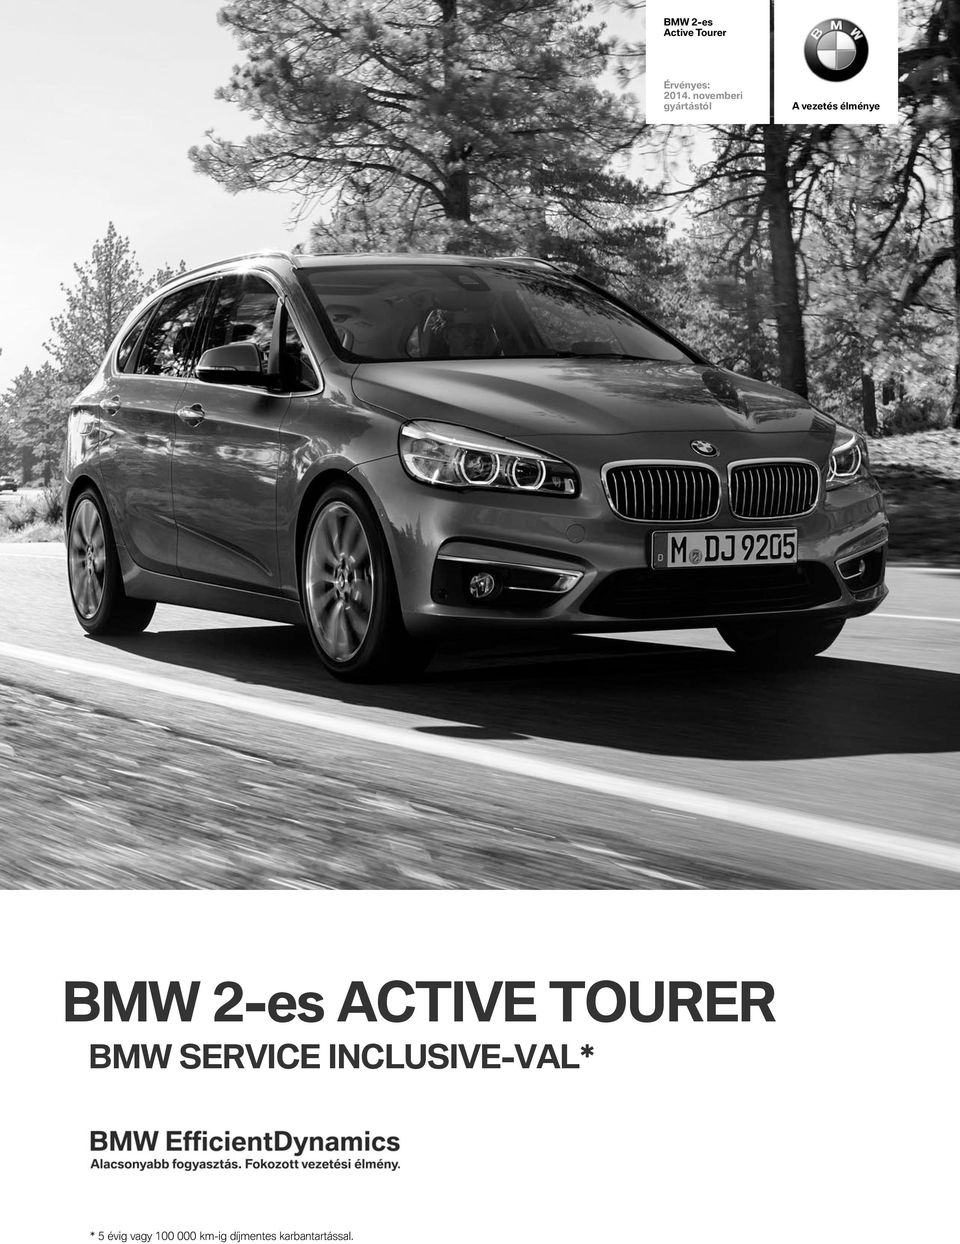 2-es active tourer BMW SERVICE INCLUSIVE-VaL*